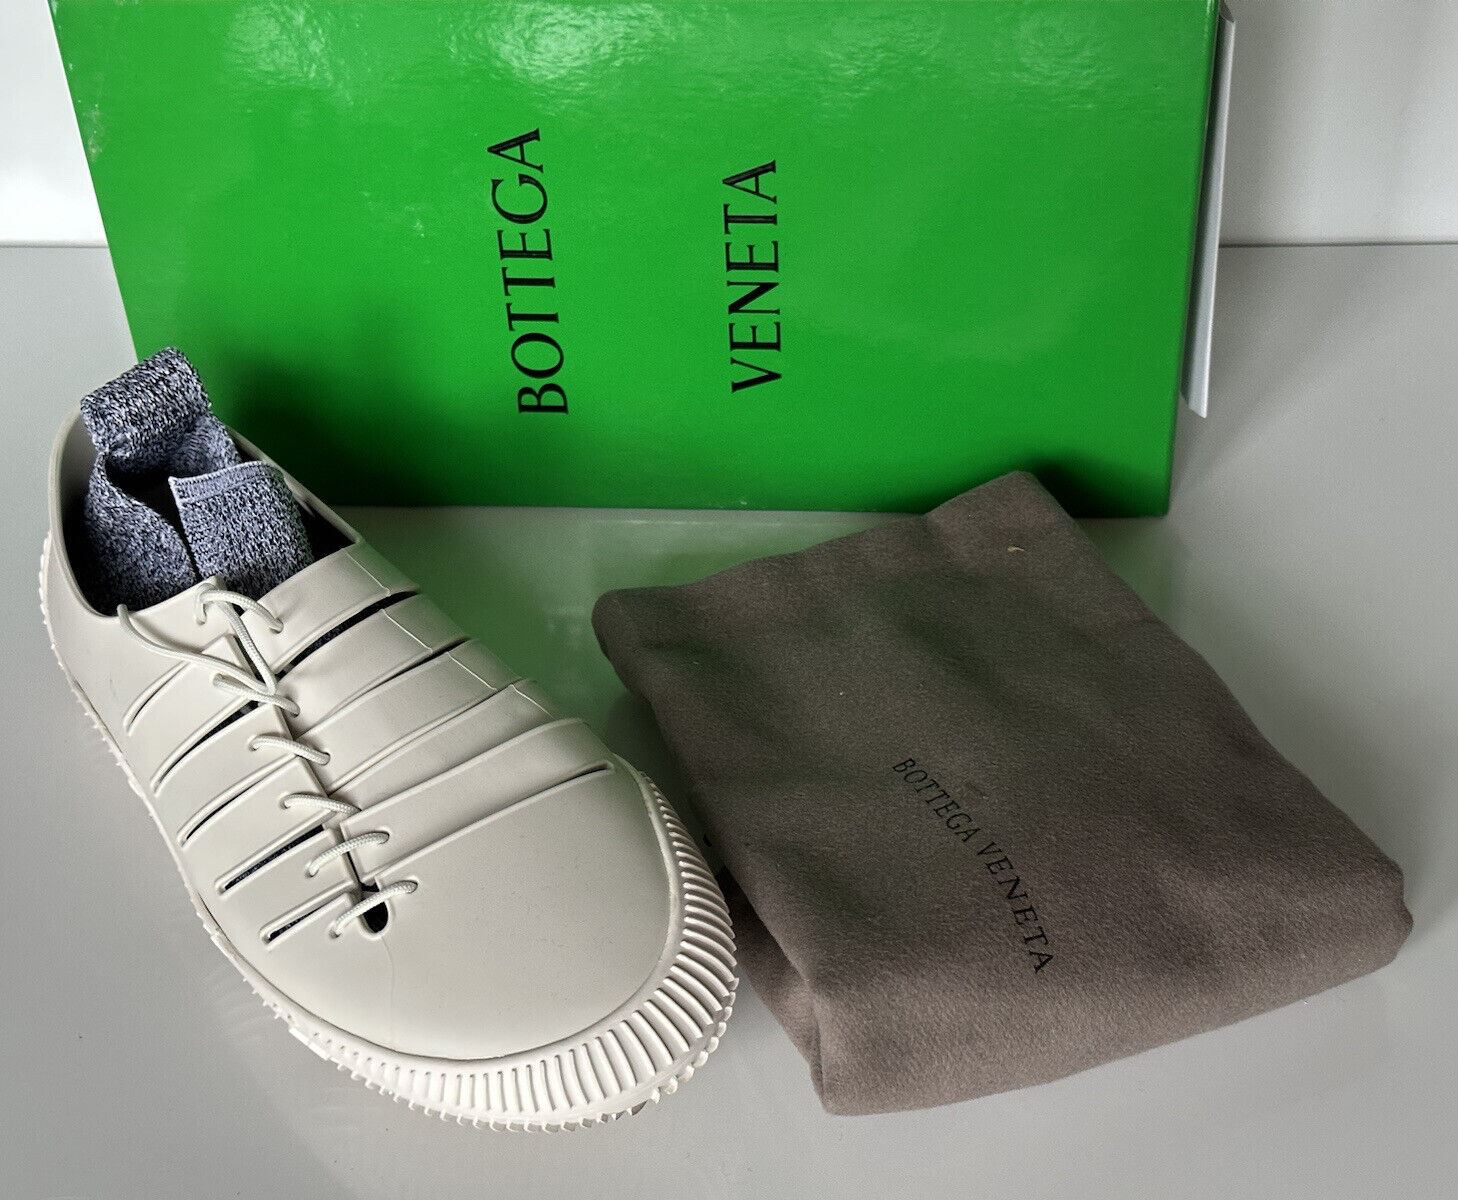 NIB $750 Bottega Veneta Tech Knit Rubber White Climber Sneakers 11 US 658725 IT